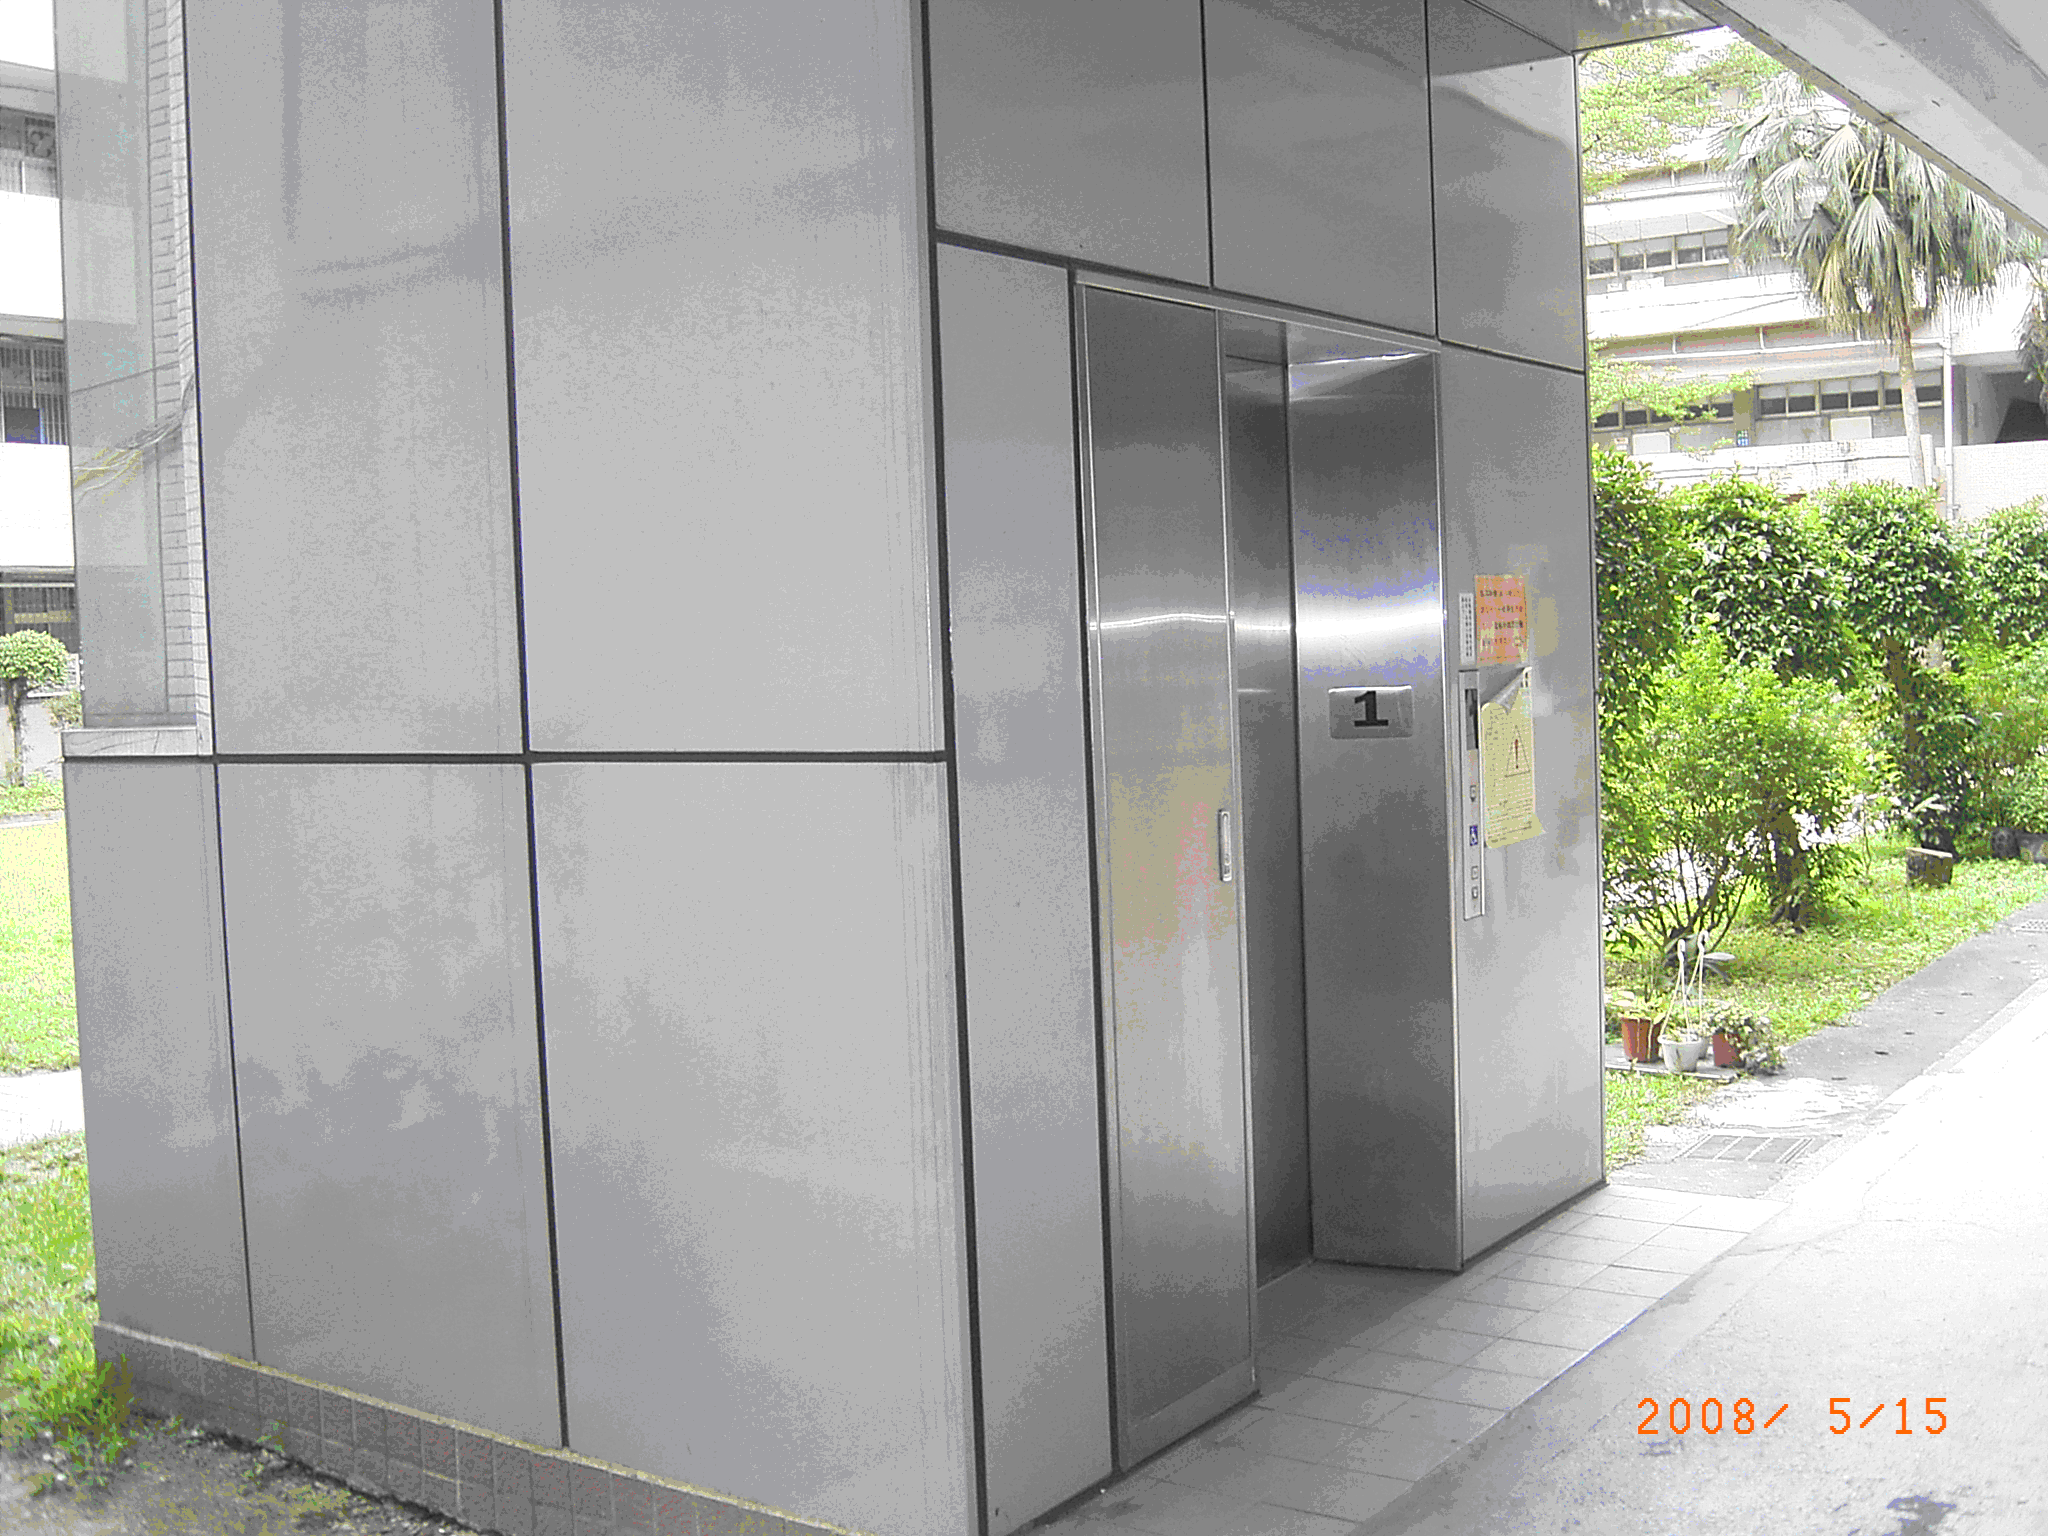 『殘障電梯』設於主要建物前棟大樓左側，可至各樓層，最高達4樓